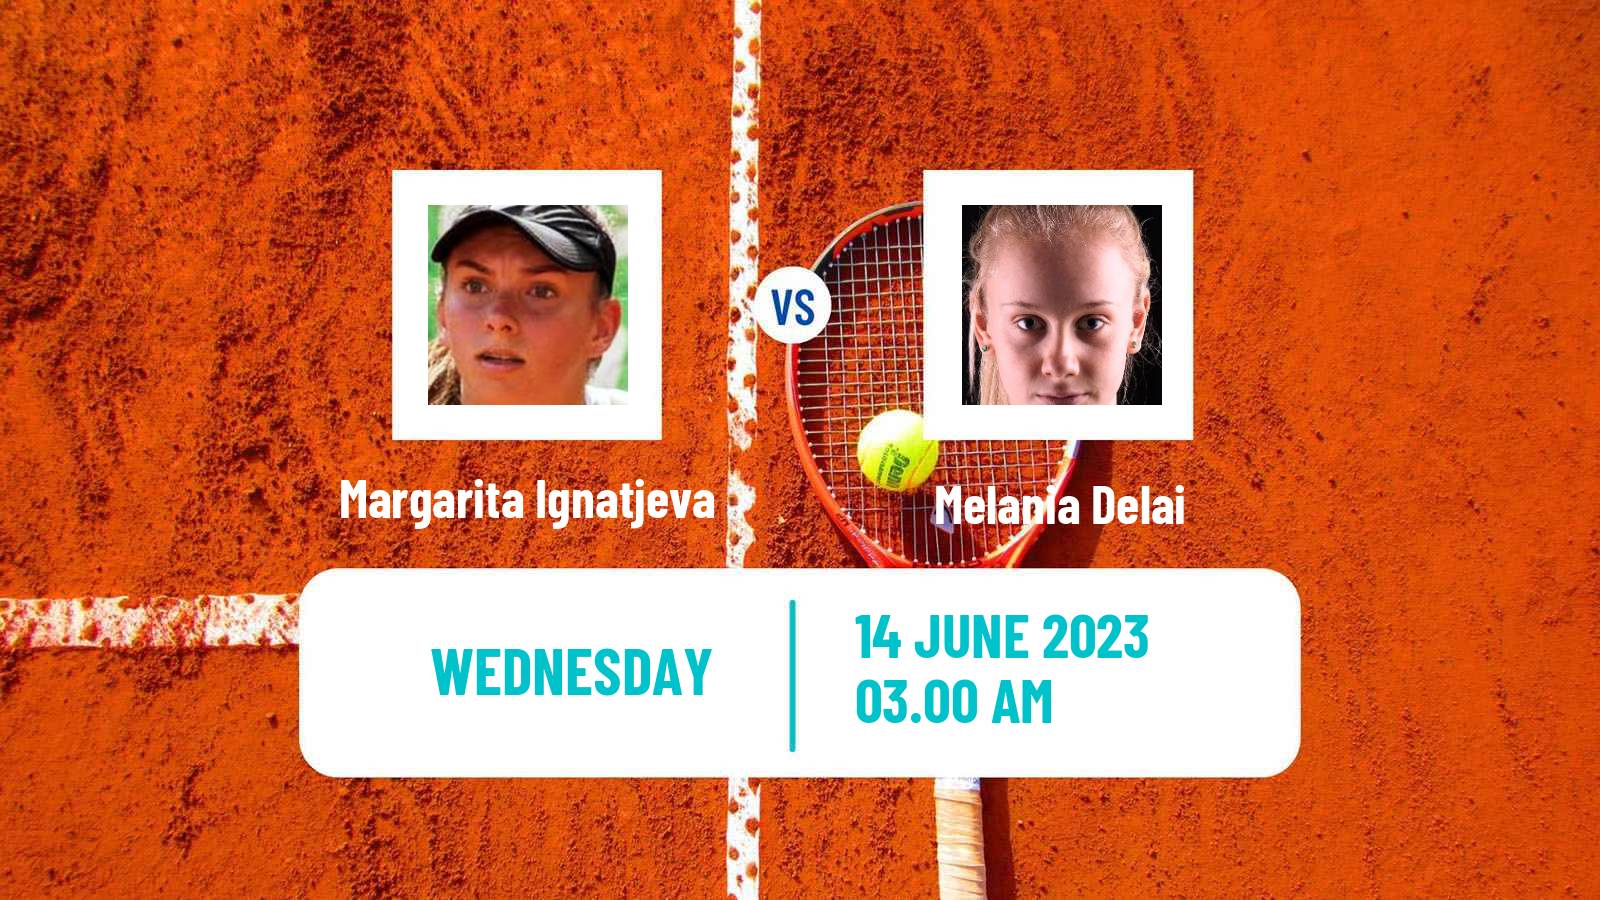 Tennis ITF W15 Kranjska Gora Women Margarita Ignatjeva - Melania Delai